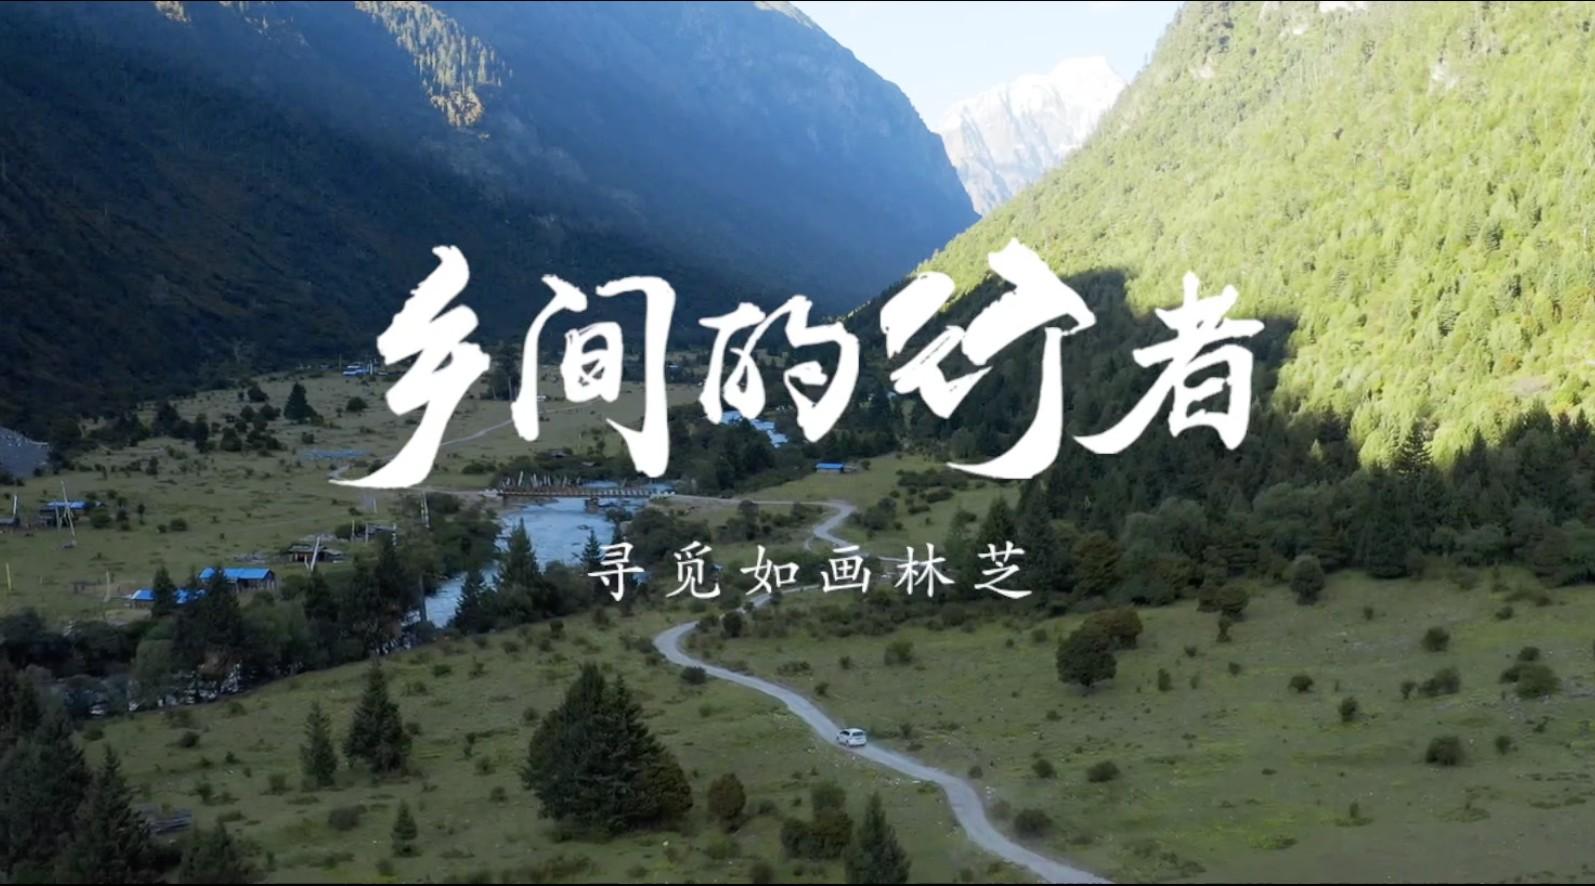 共筑中国梦·《乡间的行者》第一期《寻觅如画灵芝》